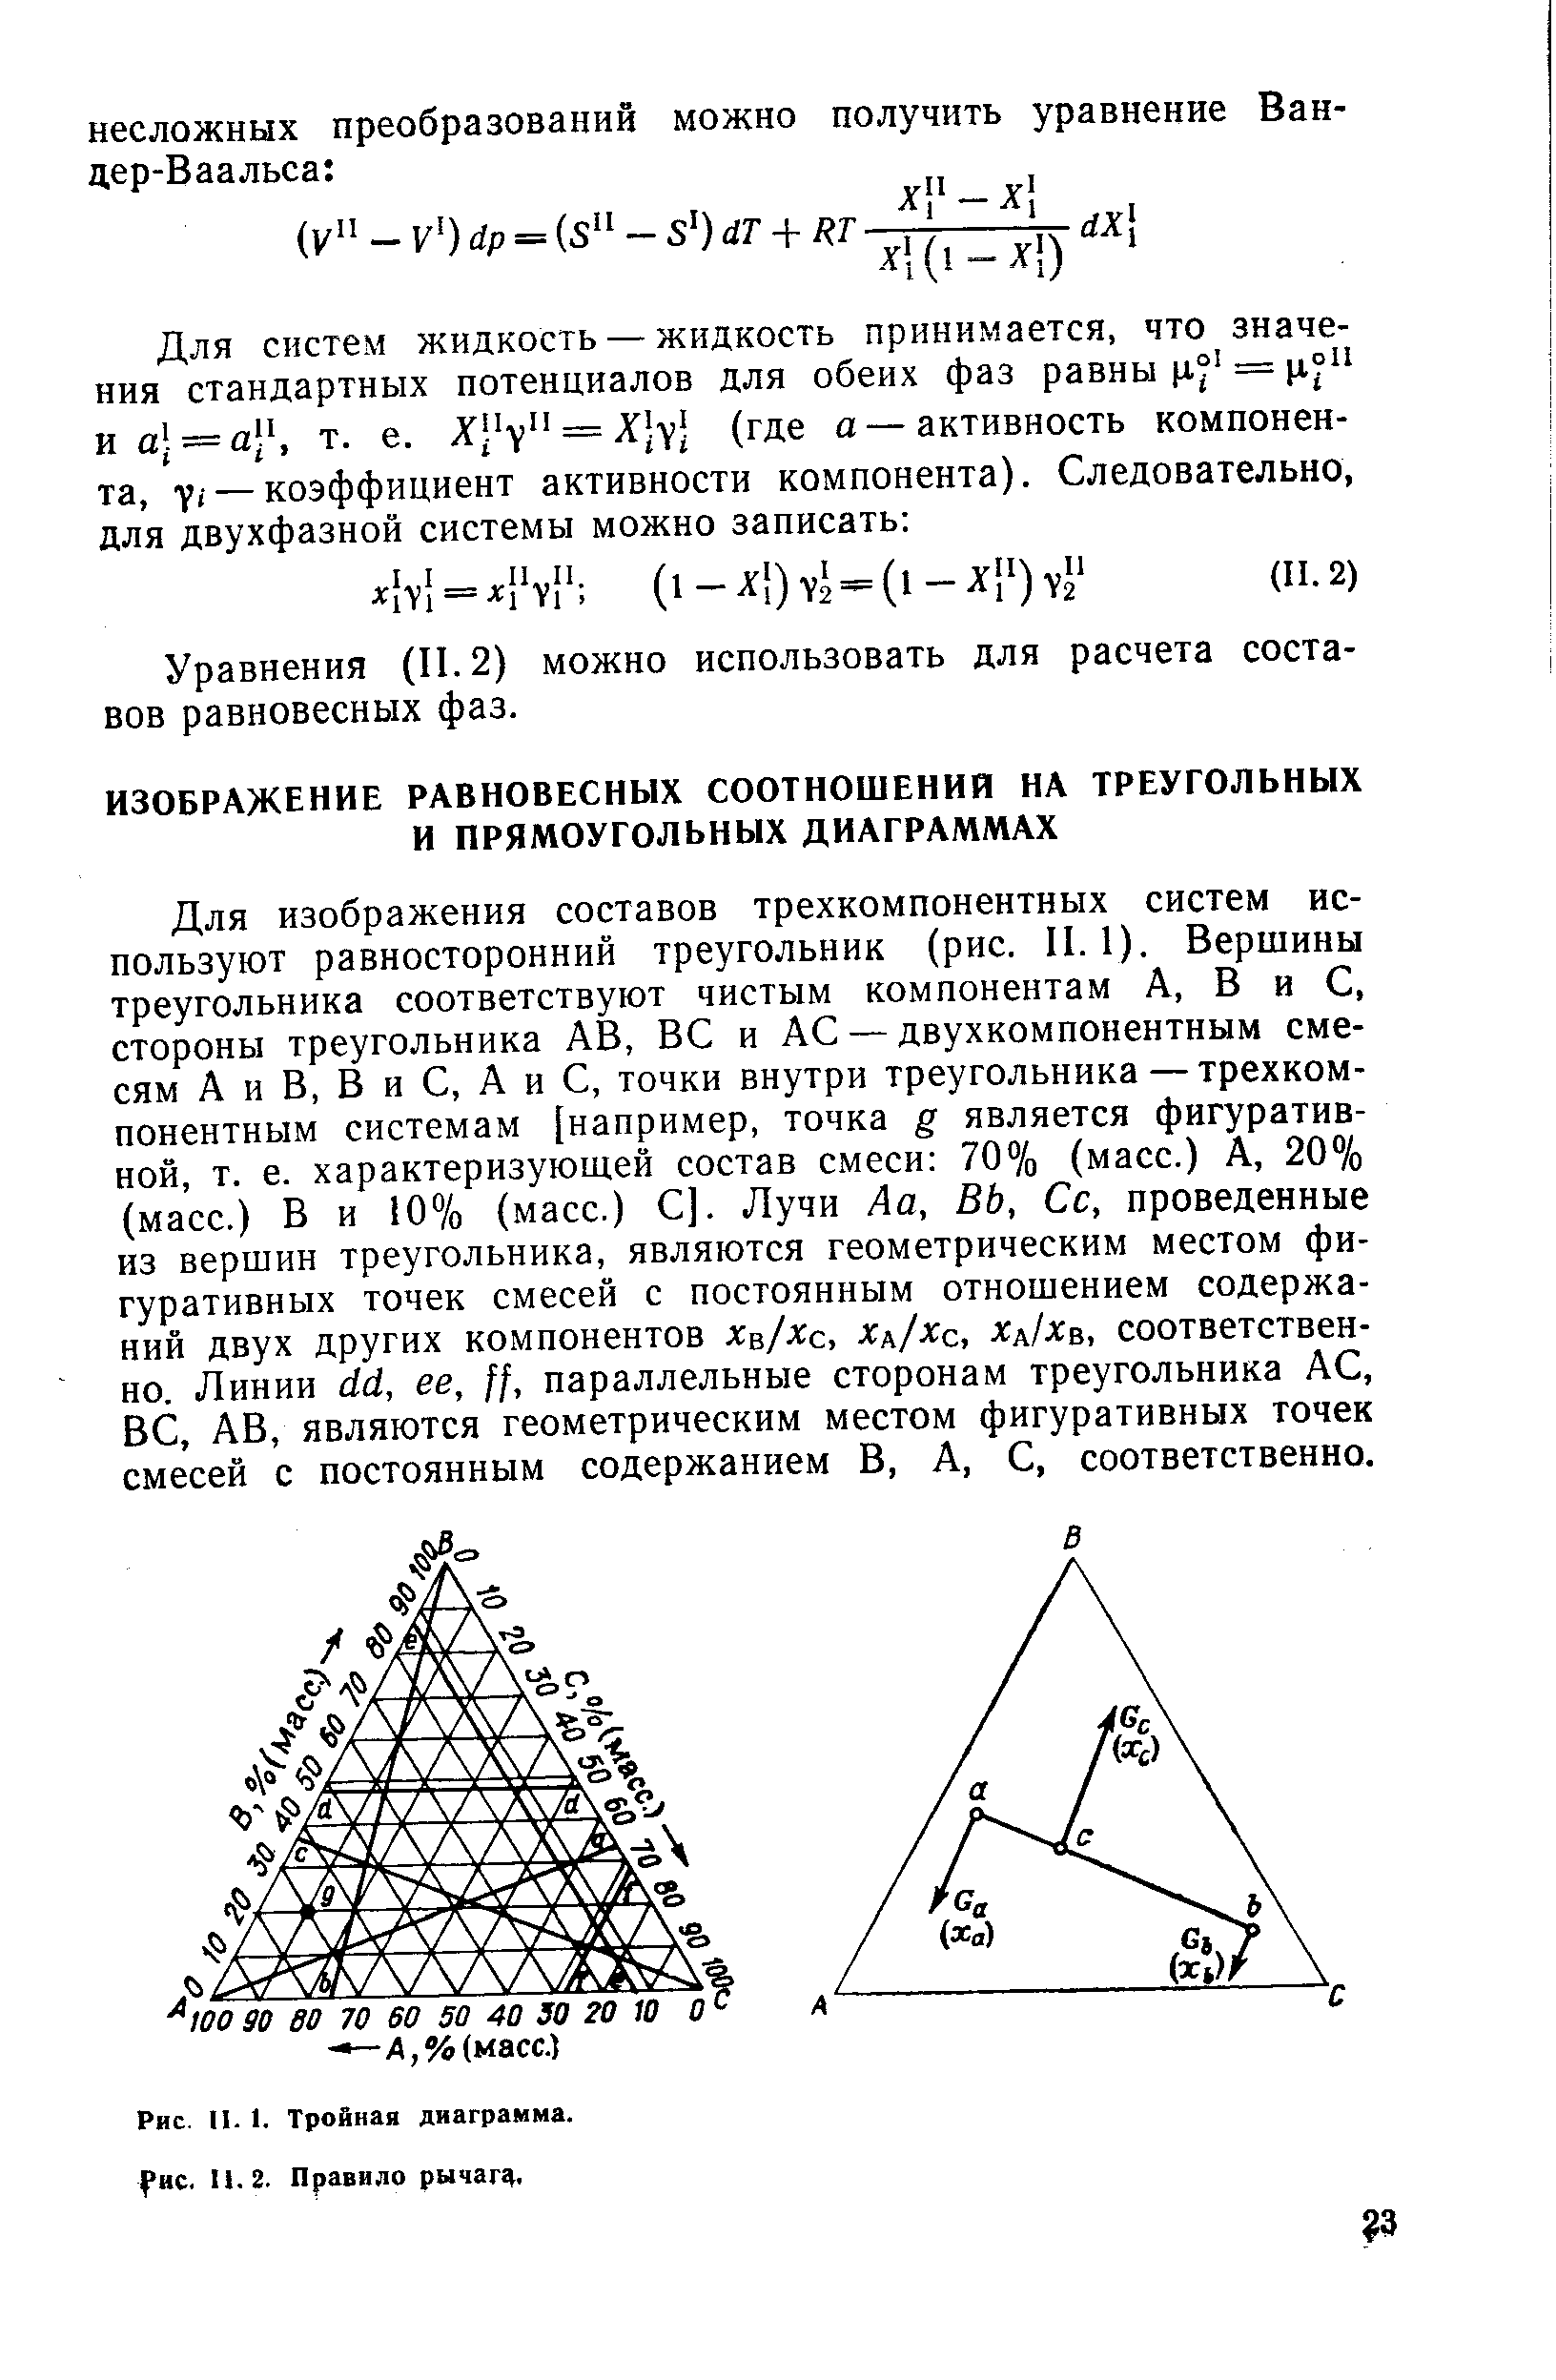 Для изображения составов трехкомпонентных систем используют равносторонний треугольник (рис. II. 1). Вершины треугольника соответствуют чистым компонентам А, В и С, стороны треугольника АВ, ВС и АС — двухкомпонентным смесям А и В, В и С, А и С, точки внутри треугольника — трехкомпонентным системам [например, точка g является фигуративной, т. е. характеризующ,ей состав смеси 70% (масс.) А, 20% (масс.) В и 10% (масс.) С]. Лучи Аа, ВЬ, Сс, проведенные из вершин треугольника, являются геометрическим местом фигуративных точек смесей с постоянным отношением содержаний двух других компонентов хц/хс, хд/хс, х хв, соответственно. Линии с1с1, ее, параллельные сторонам треугольника АС, ВС, АВ, являются геометрическим местом фигуративных точек смесей с постоянным содержанием В, А, С, соответственно.